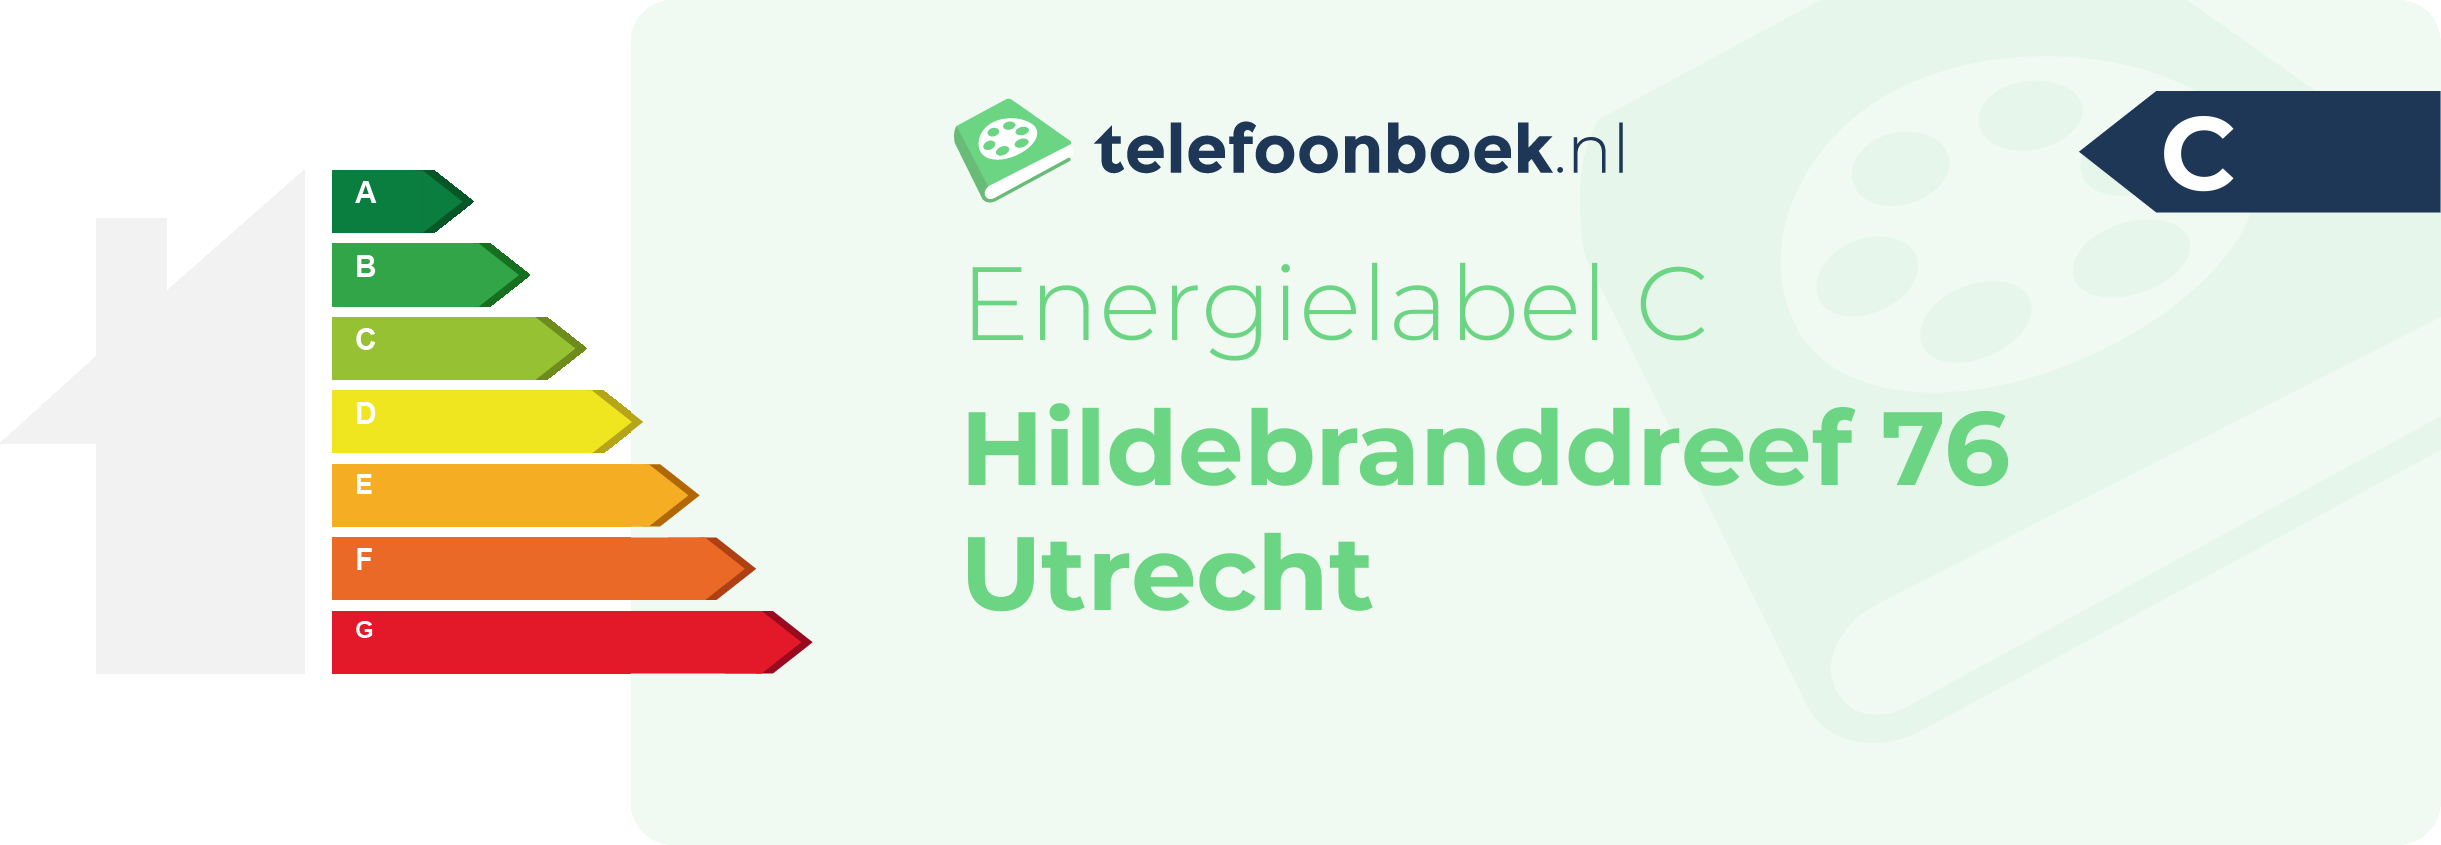 Energielabel Hildebranddreef 76 Utrecht